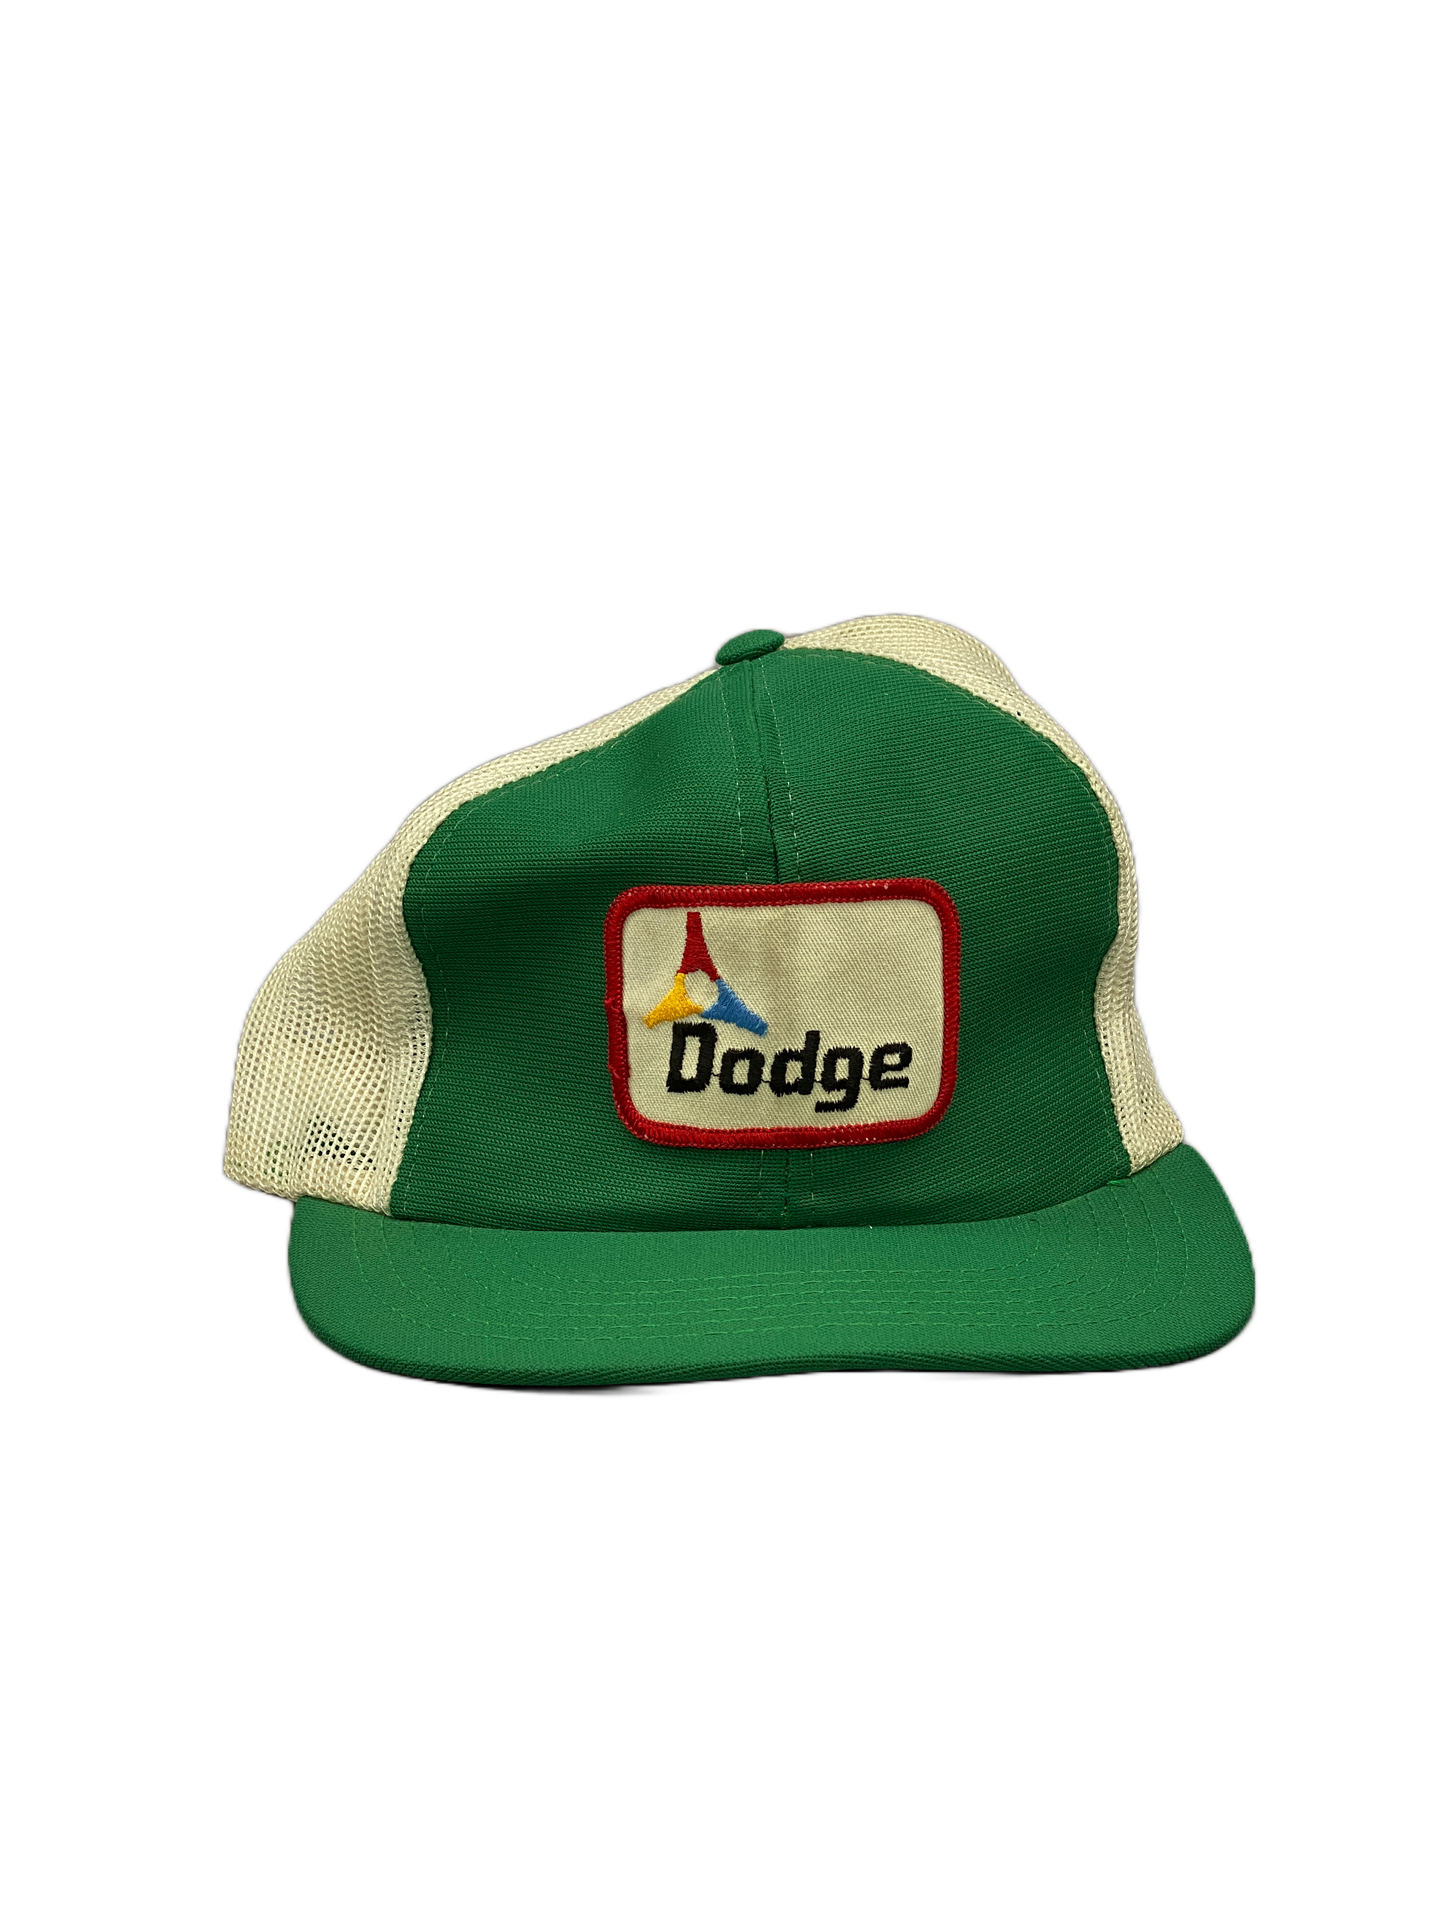 Dodge Vintage Trucker Cap